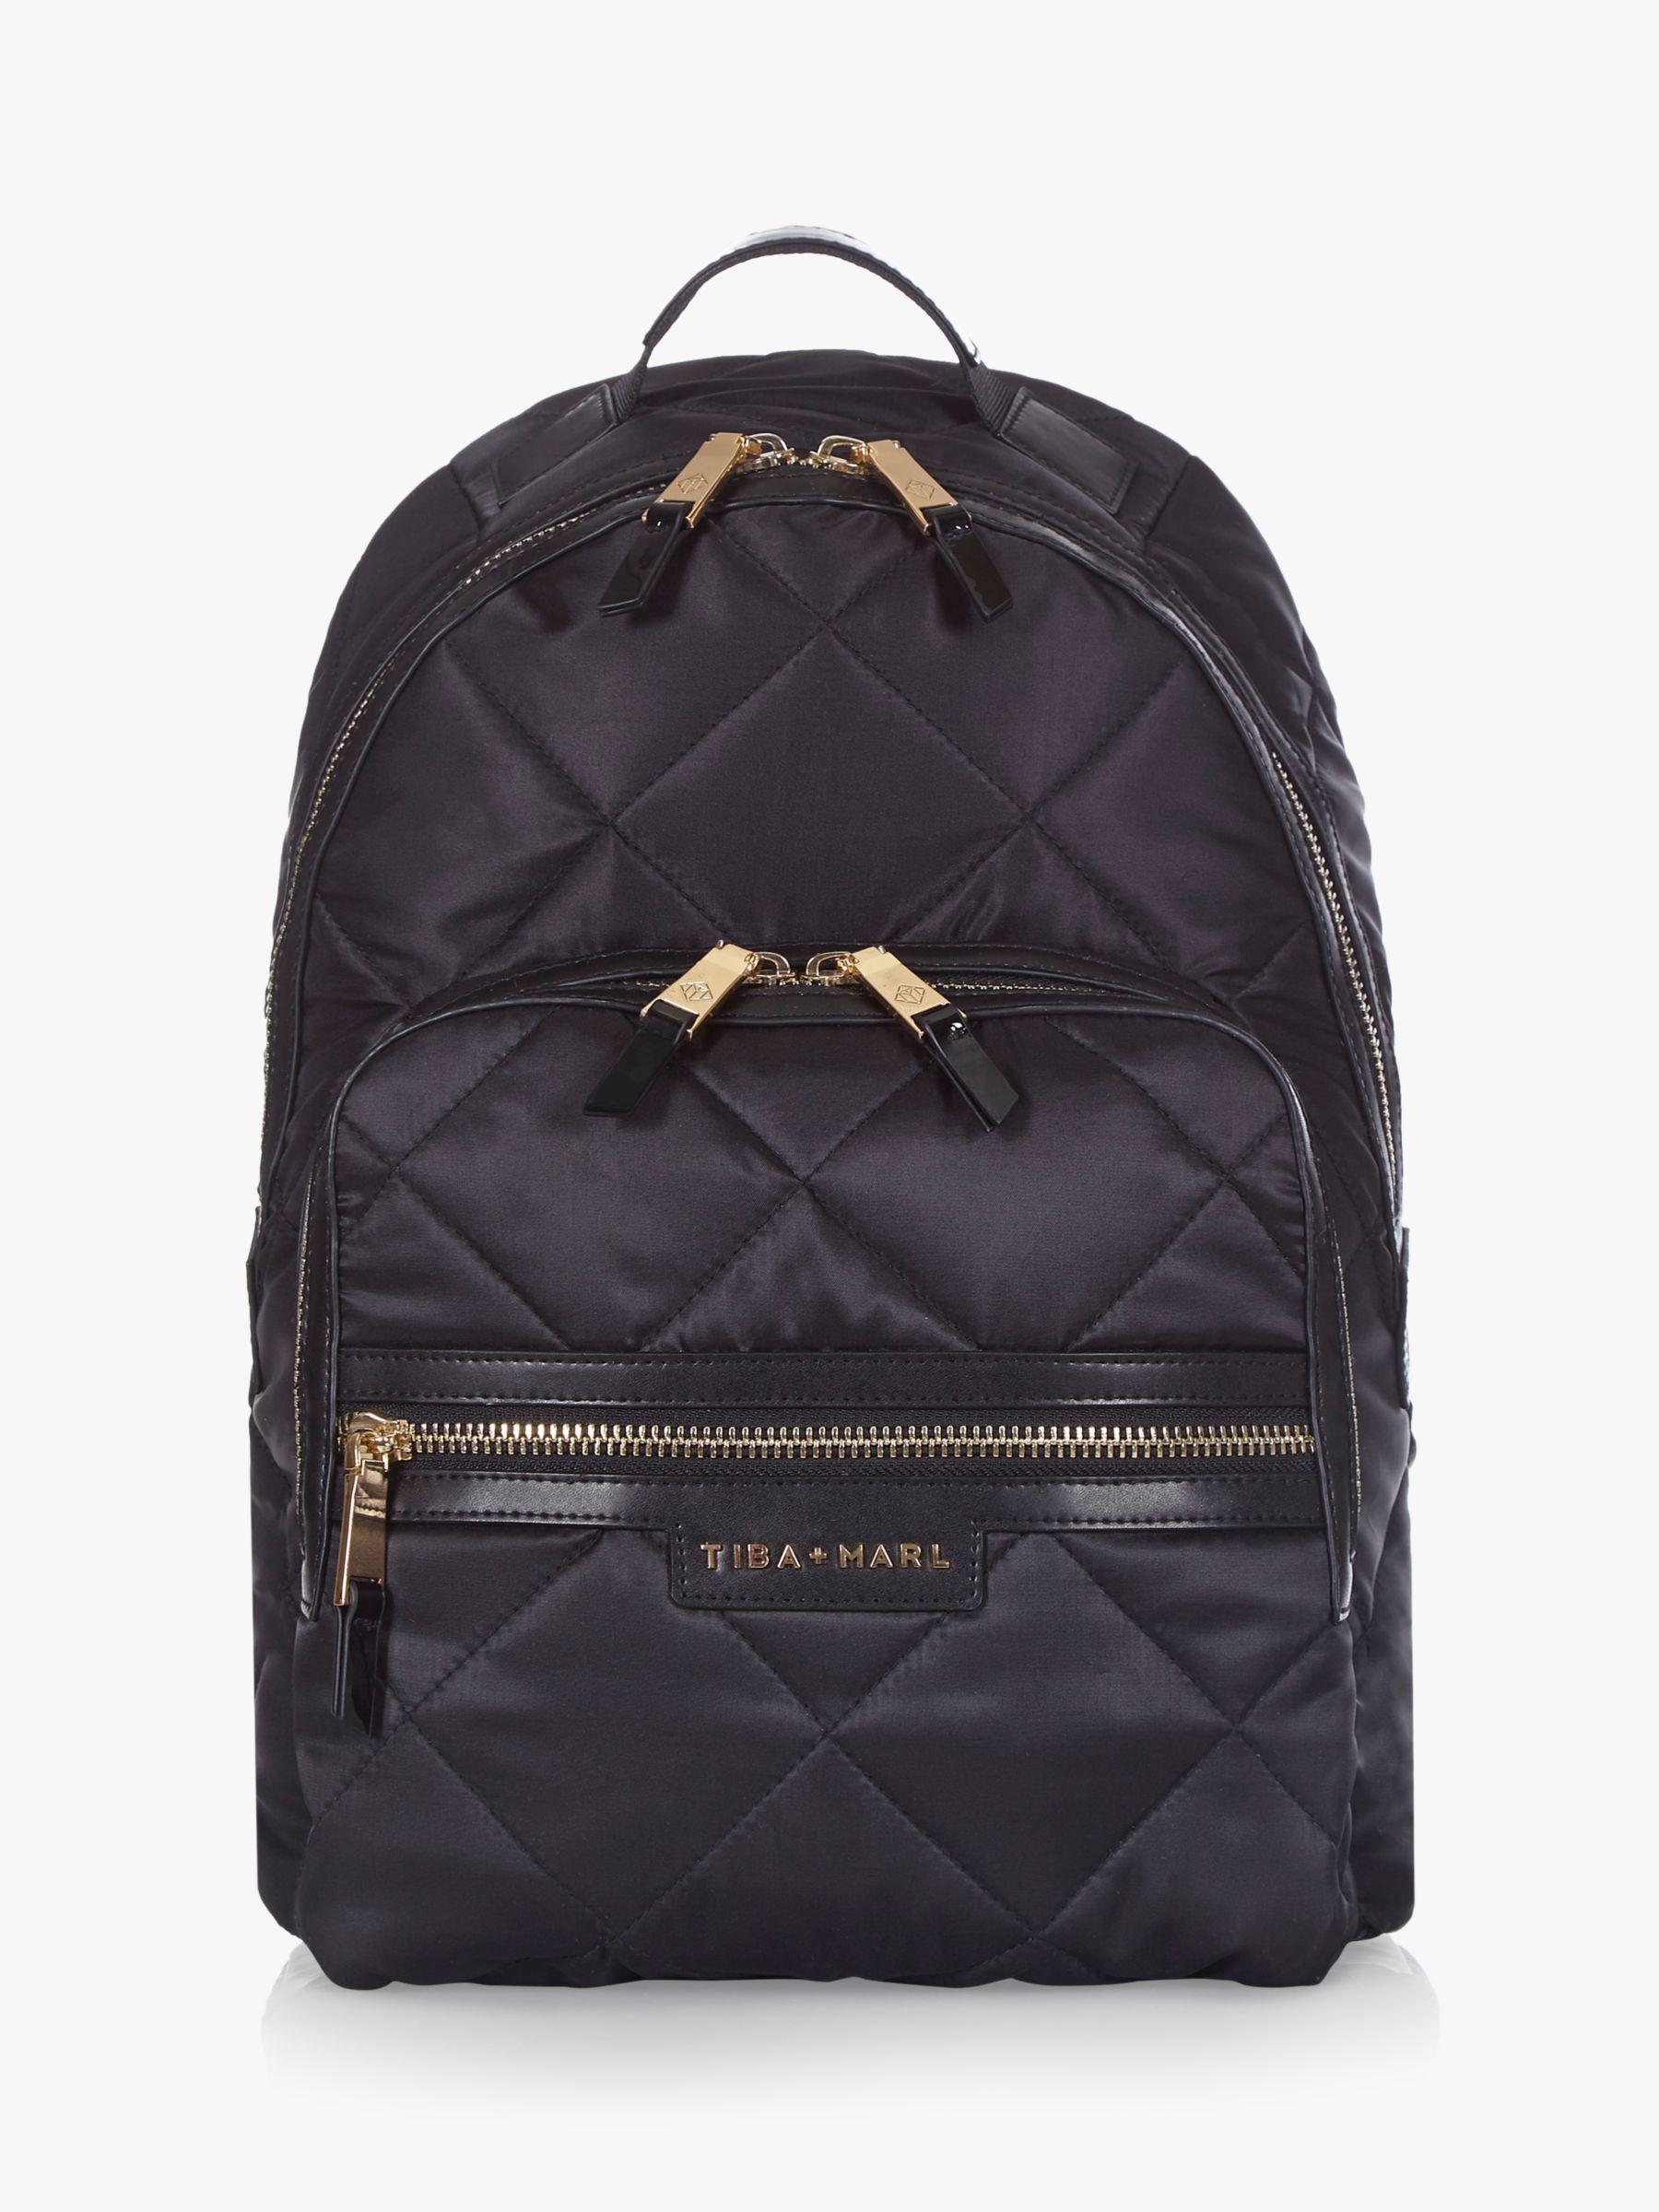 Image of Tiba Marl Elwood Backpack Changing Bag Black Quilt